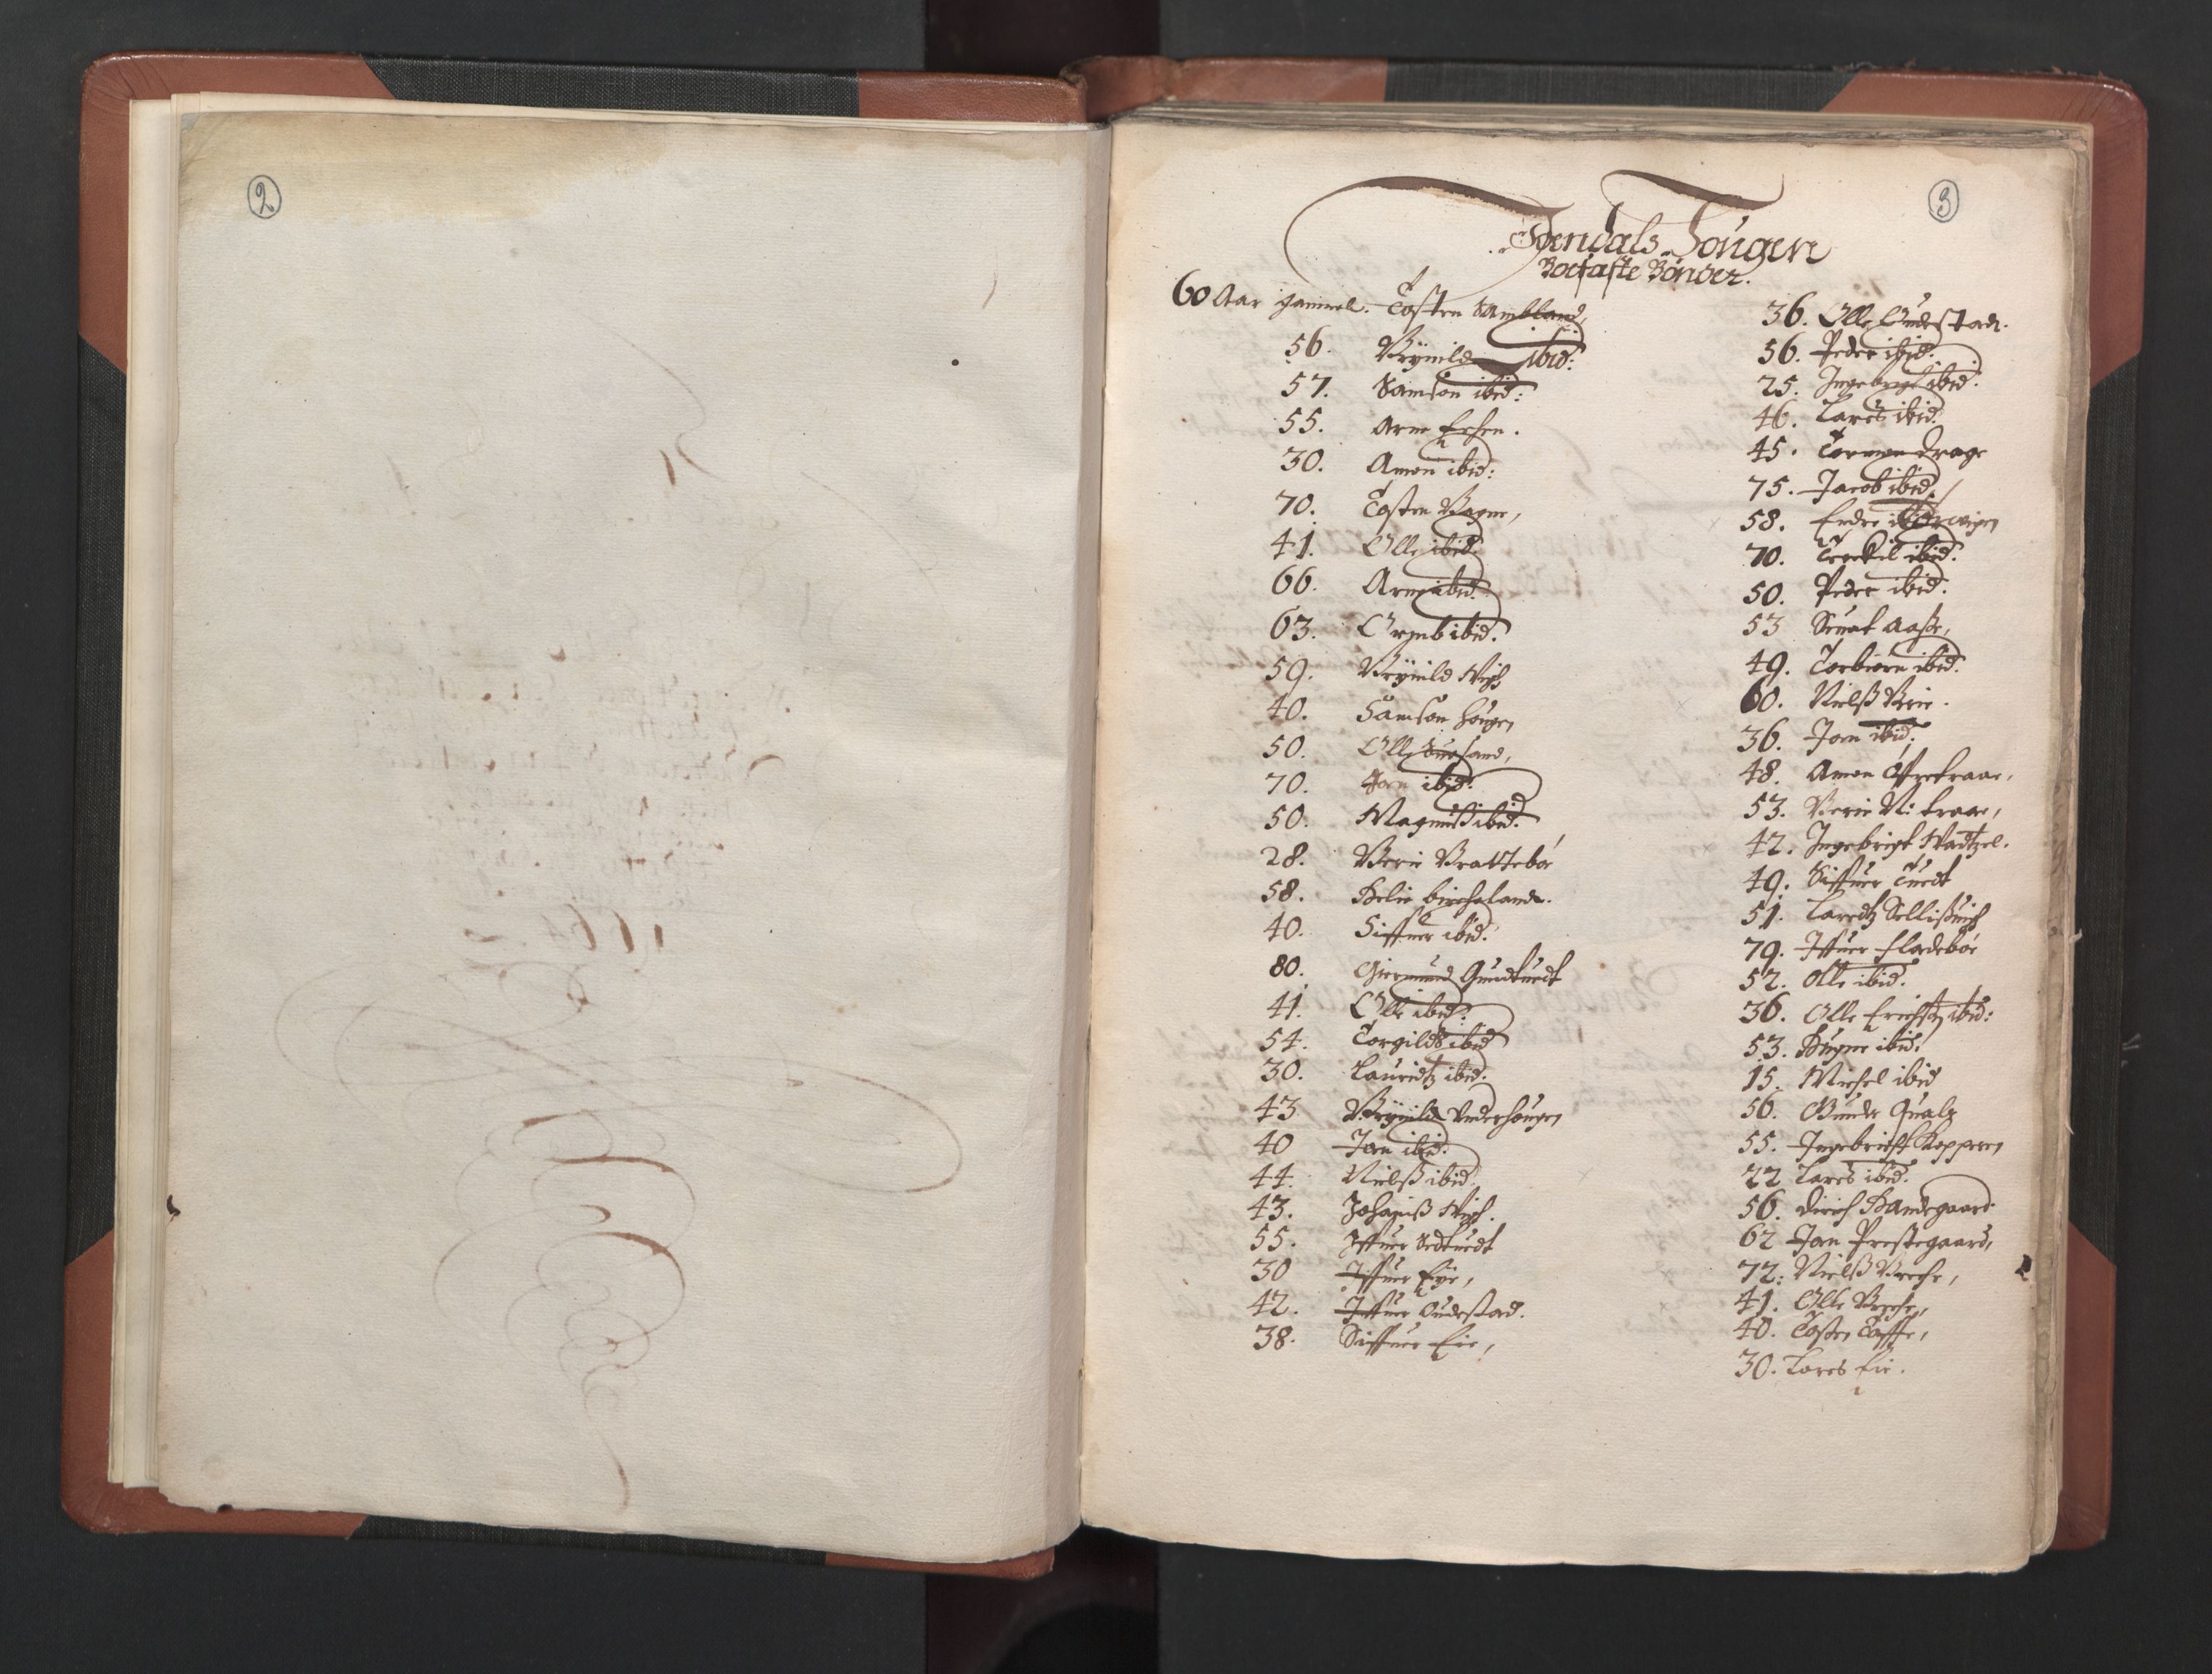 RA, Bailiff's Census 1664-1666, no. 14: Hardanger len, Ytre Sogn fogderi and Indre Sogn fogderi, 1664-1665, p. 2-3